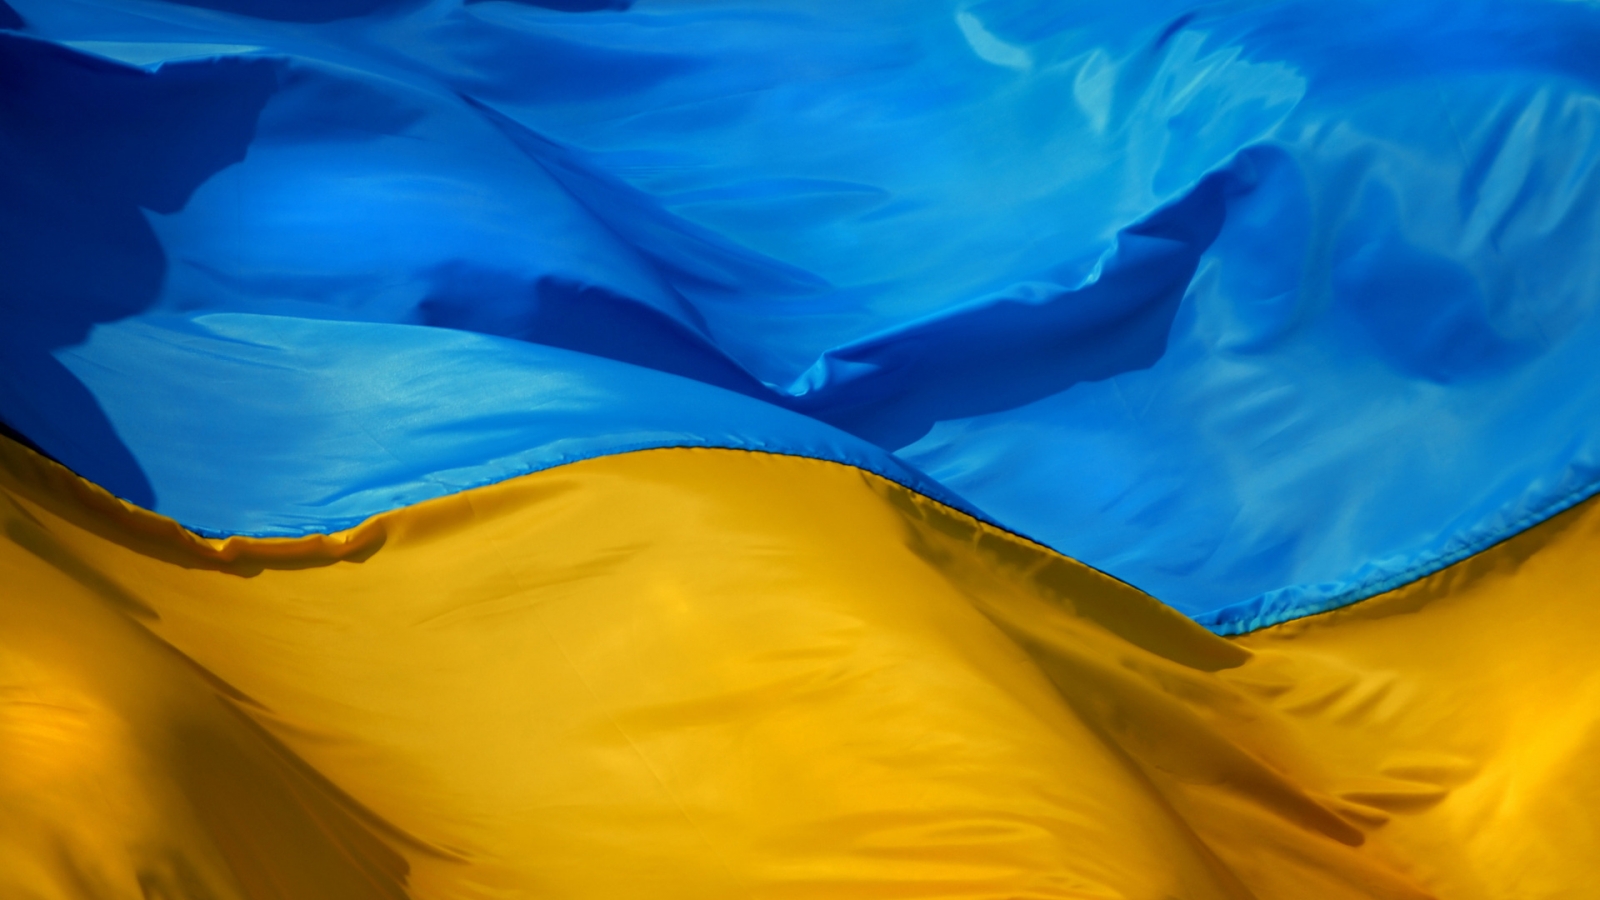 Ukraine Flag for 1600 x 900 HDTV resolution